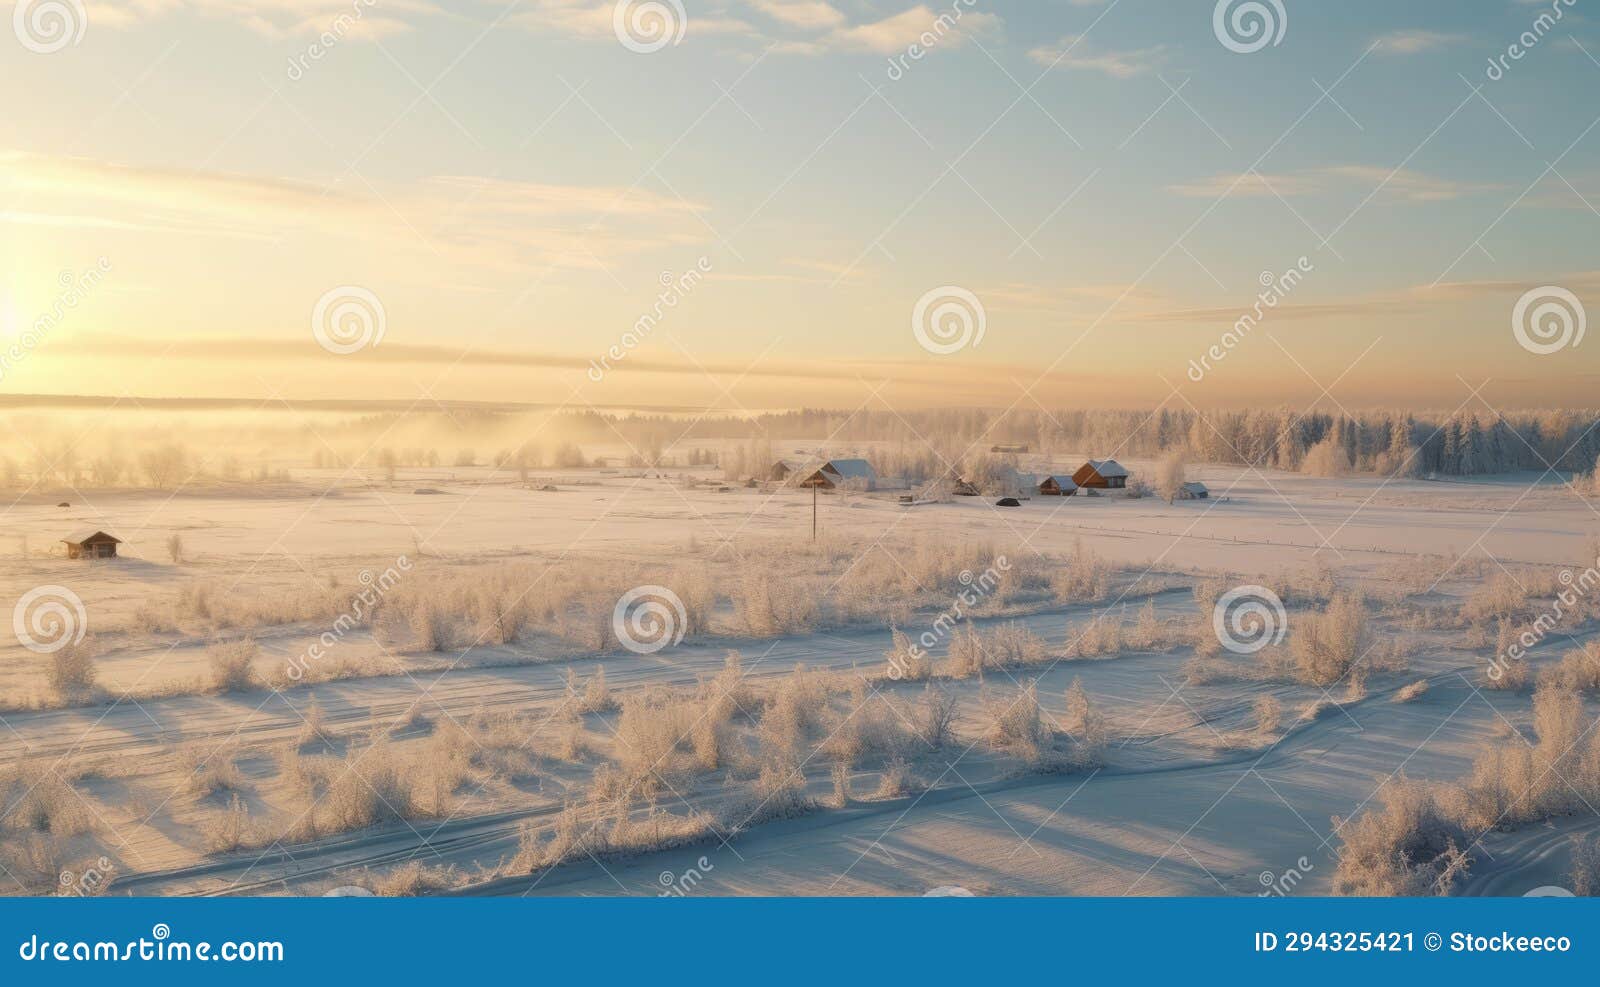 winter wonderland: a serene farm in rural finland